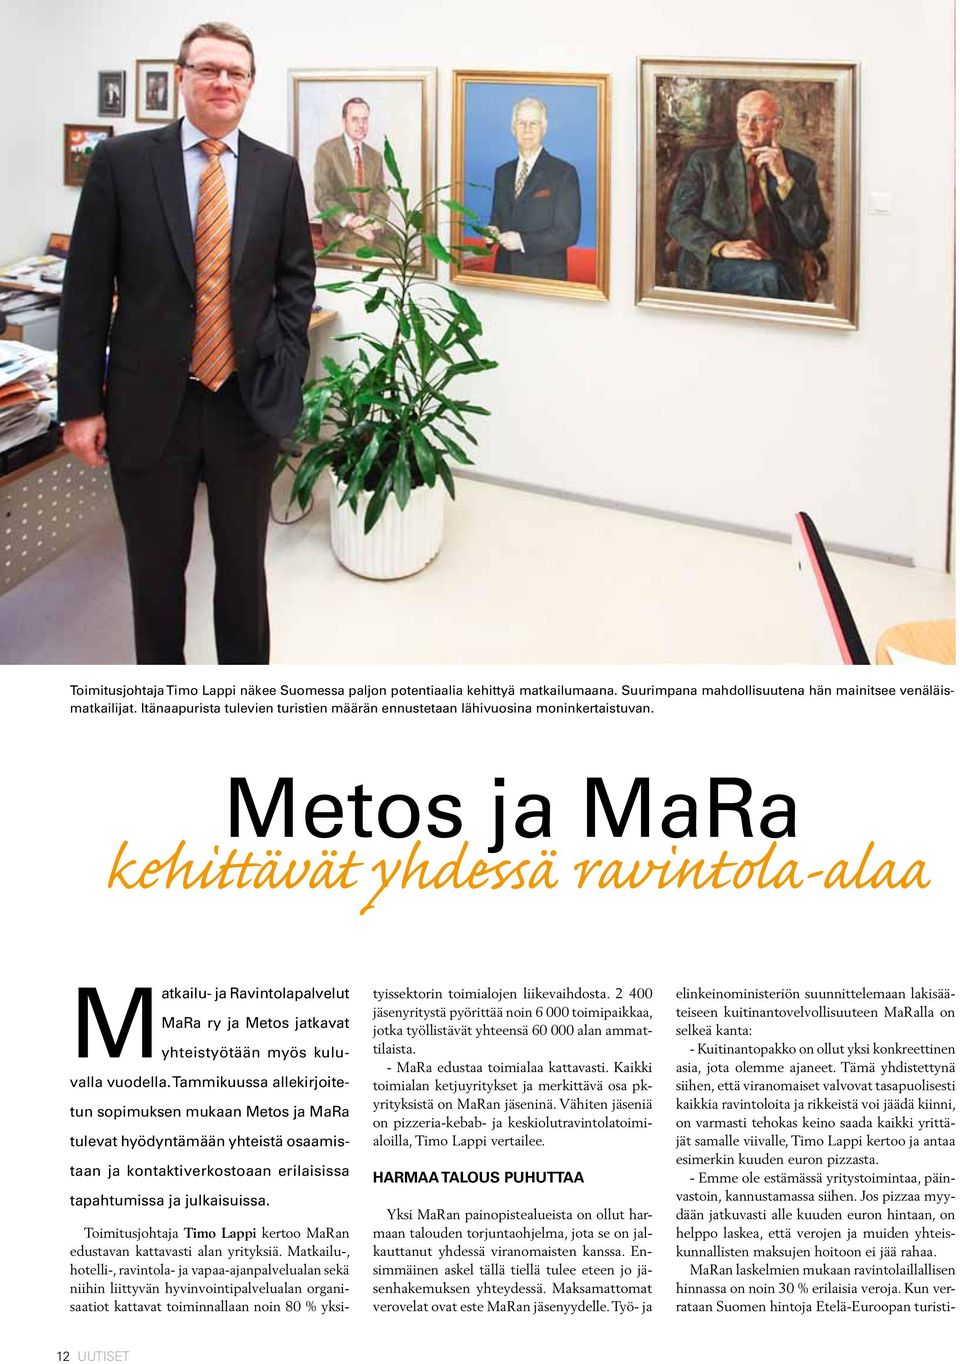 Metos ja MaRa kehittävät yhdessä ravintola-alaa Matkailu- ja Ravintolapalvelut MaRa ry ja Metos jatkavat yhteistyötään myös kuluvalla vuodella.